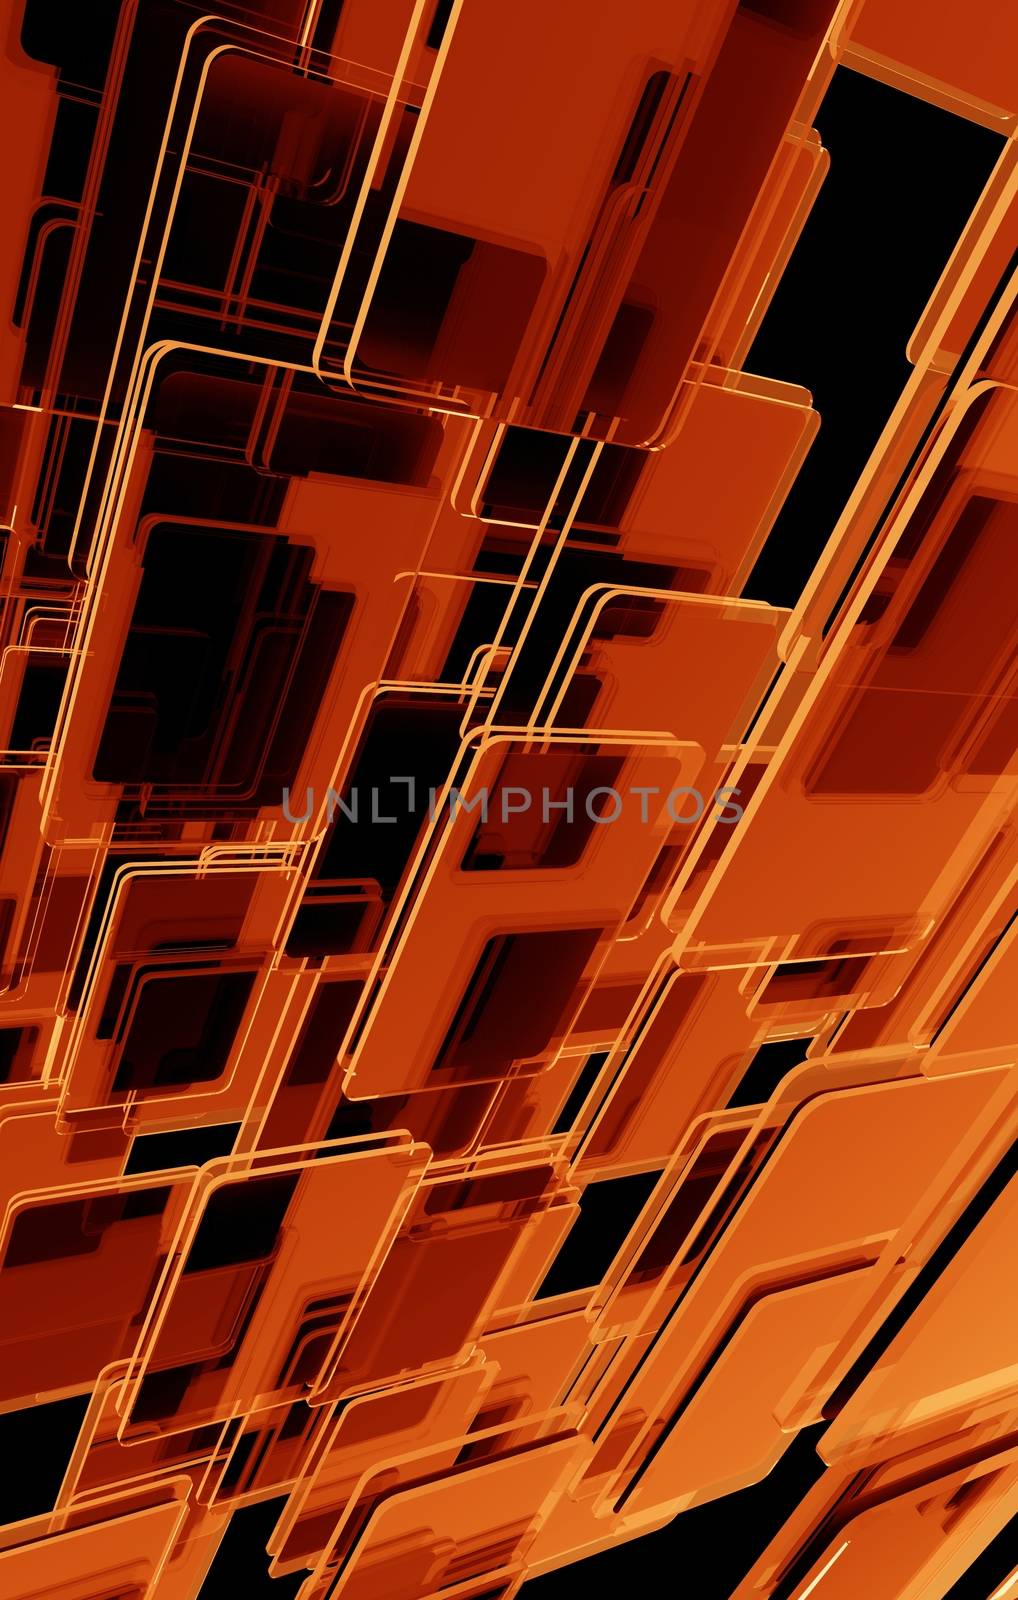 Dark Orange Background. Orange-Reddish Glass Blocks Vertical Background.